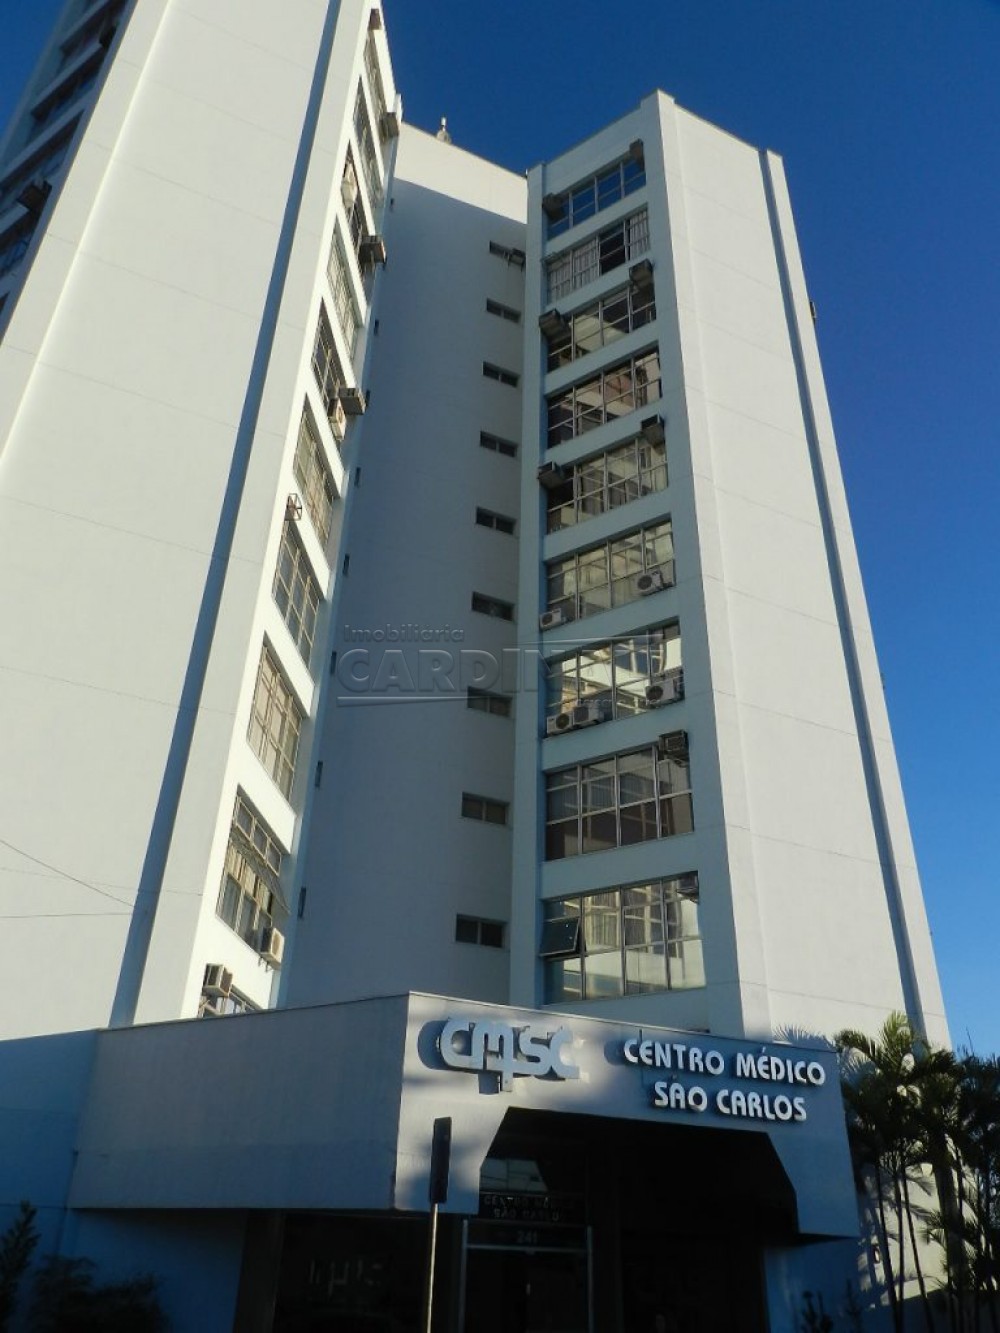 Centro Mdico So Carlos